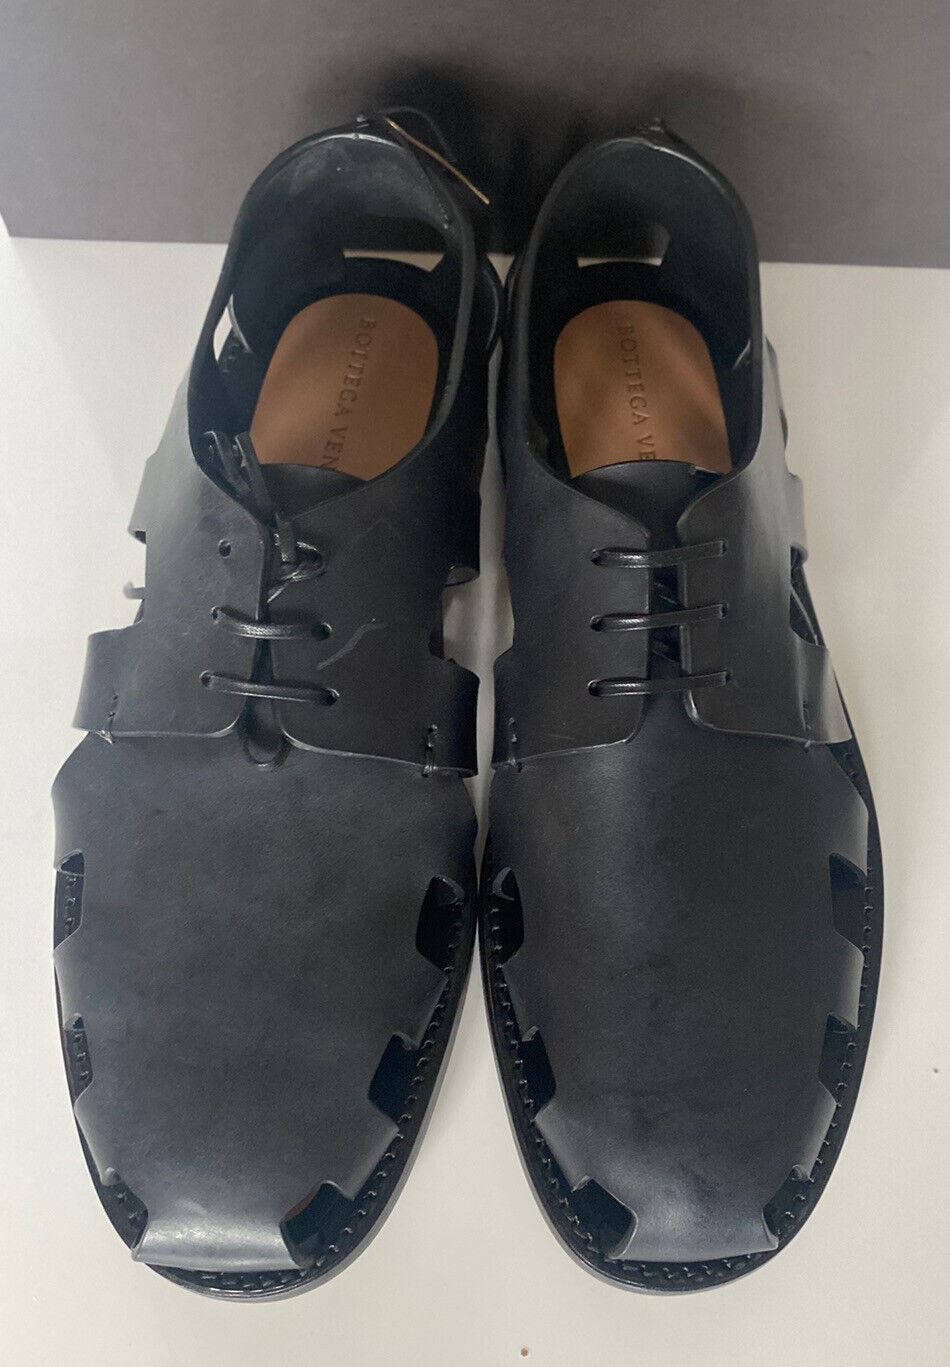 NIB $890 Bottega Veneta Men's Derby Leather Shoes Cut-out Details 8.5 US 574829